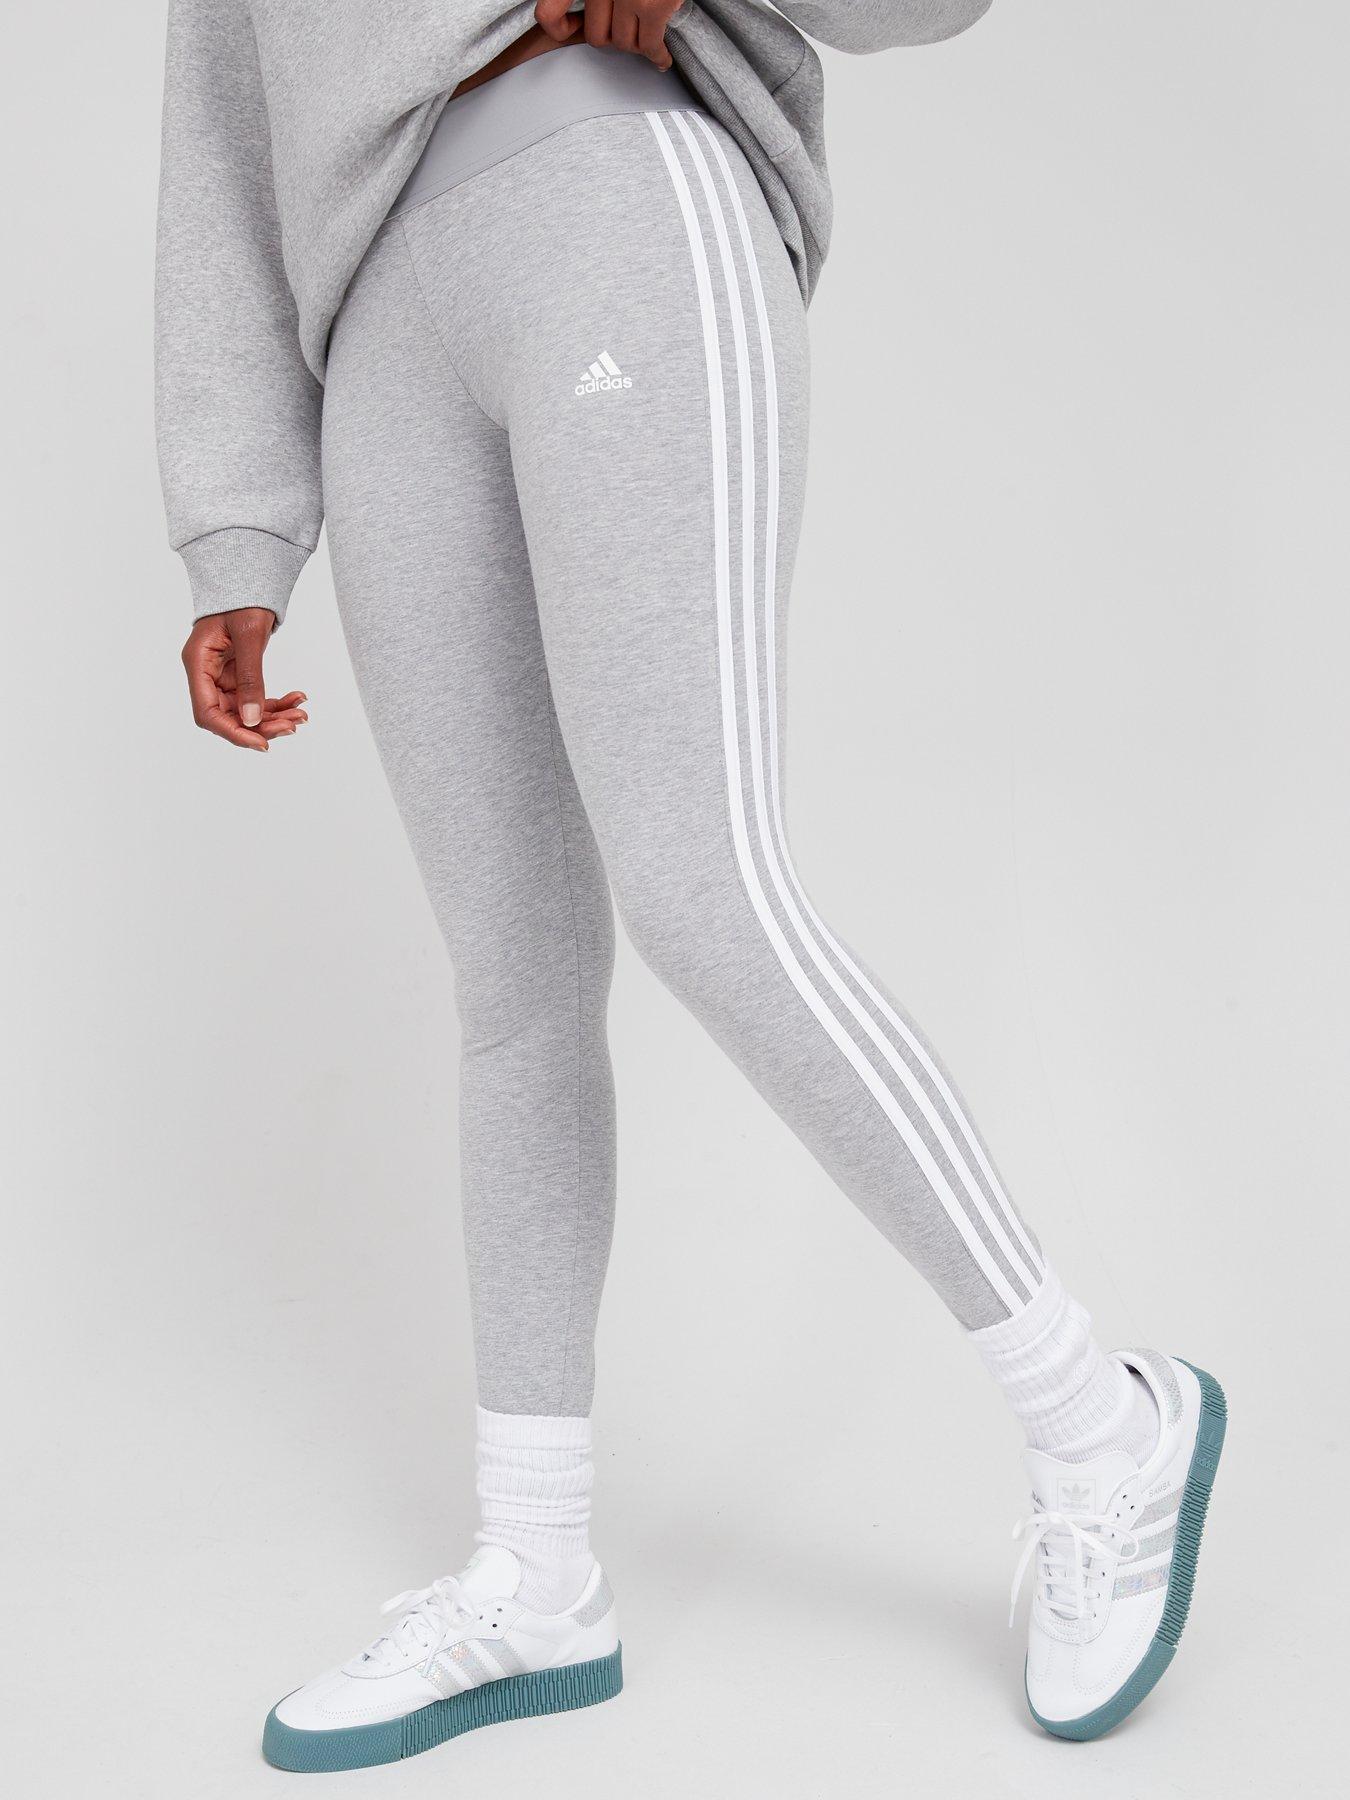 Adidas MEDIUM GREY HEATHER/WHITE Women's Essentials Leggings, US Medium